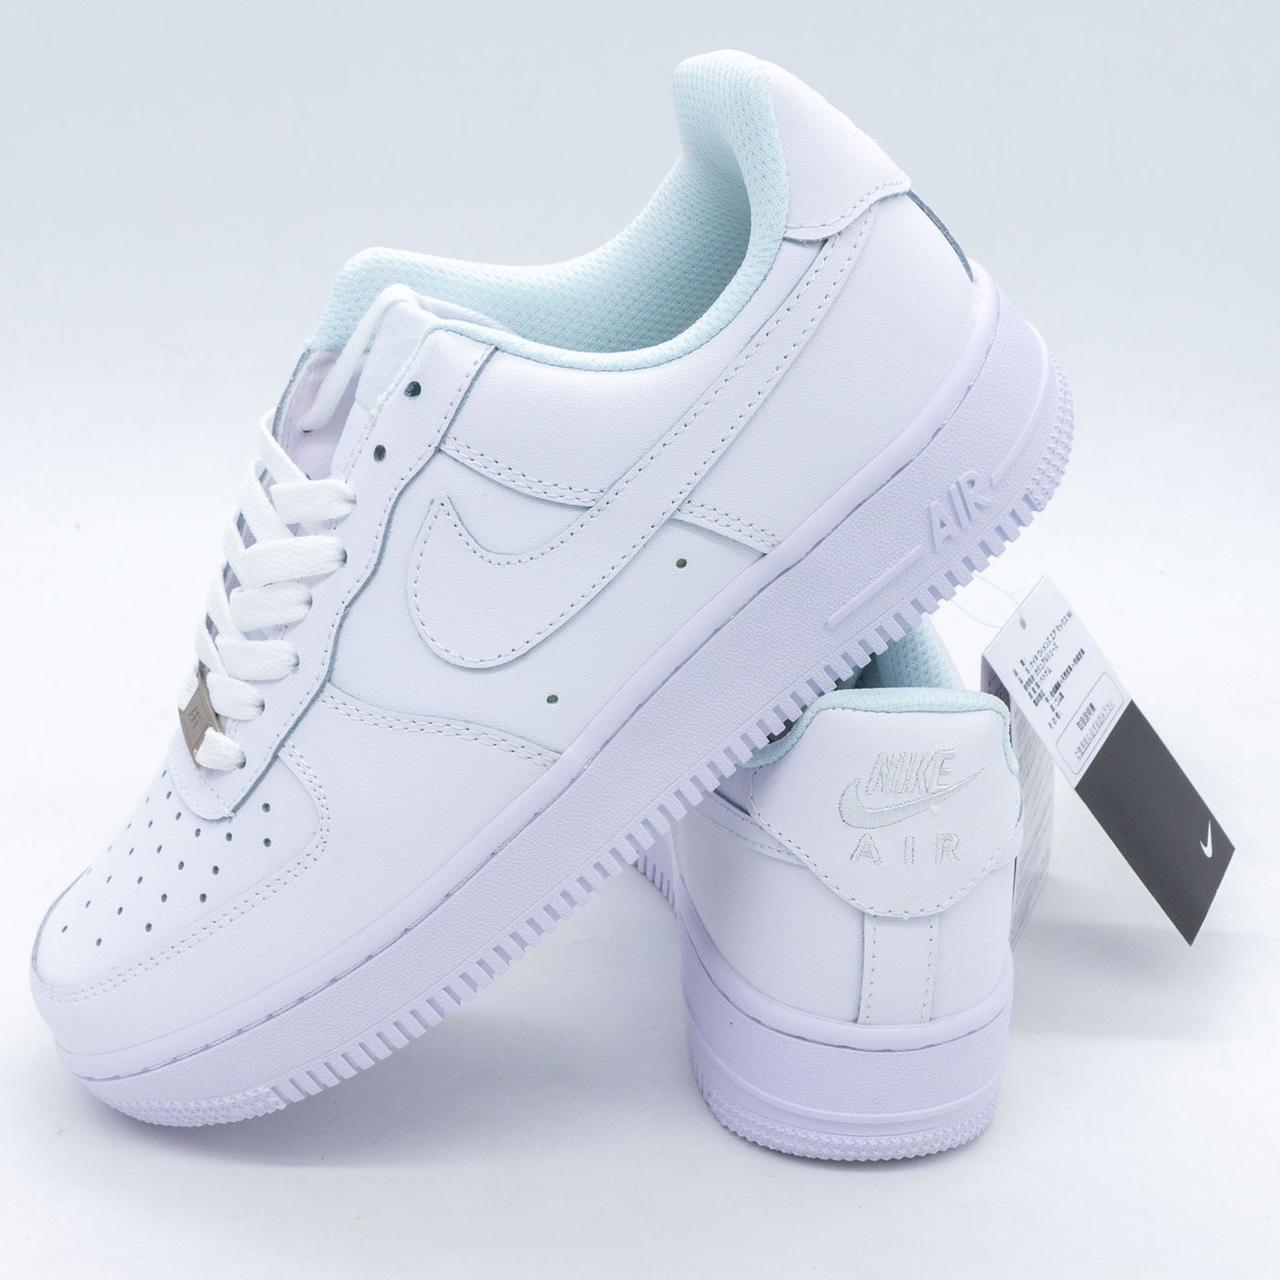 Кросівки Nike Air Force 1 низькі білі - Топ якість 40. Розміри в наявності: 40, 41, 44.